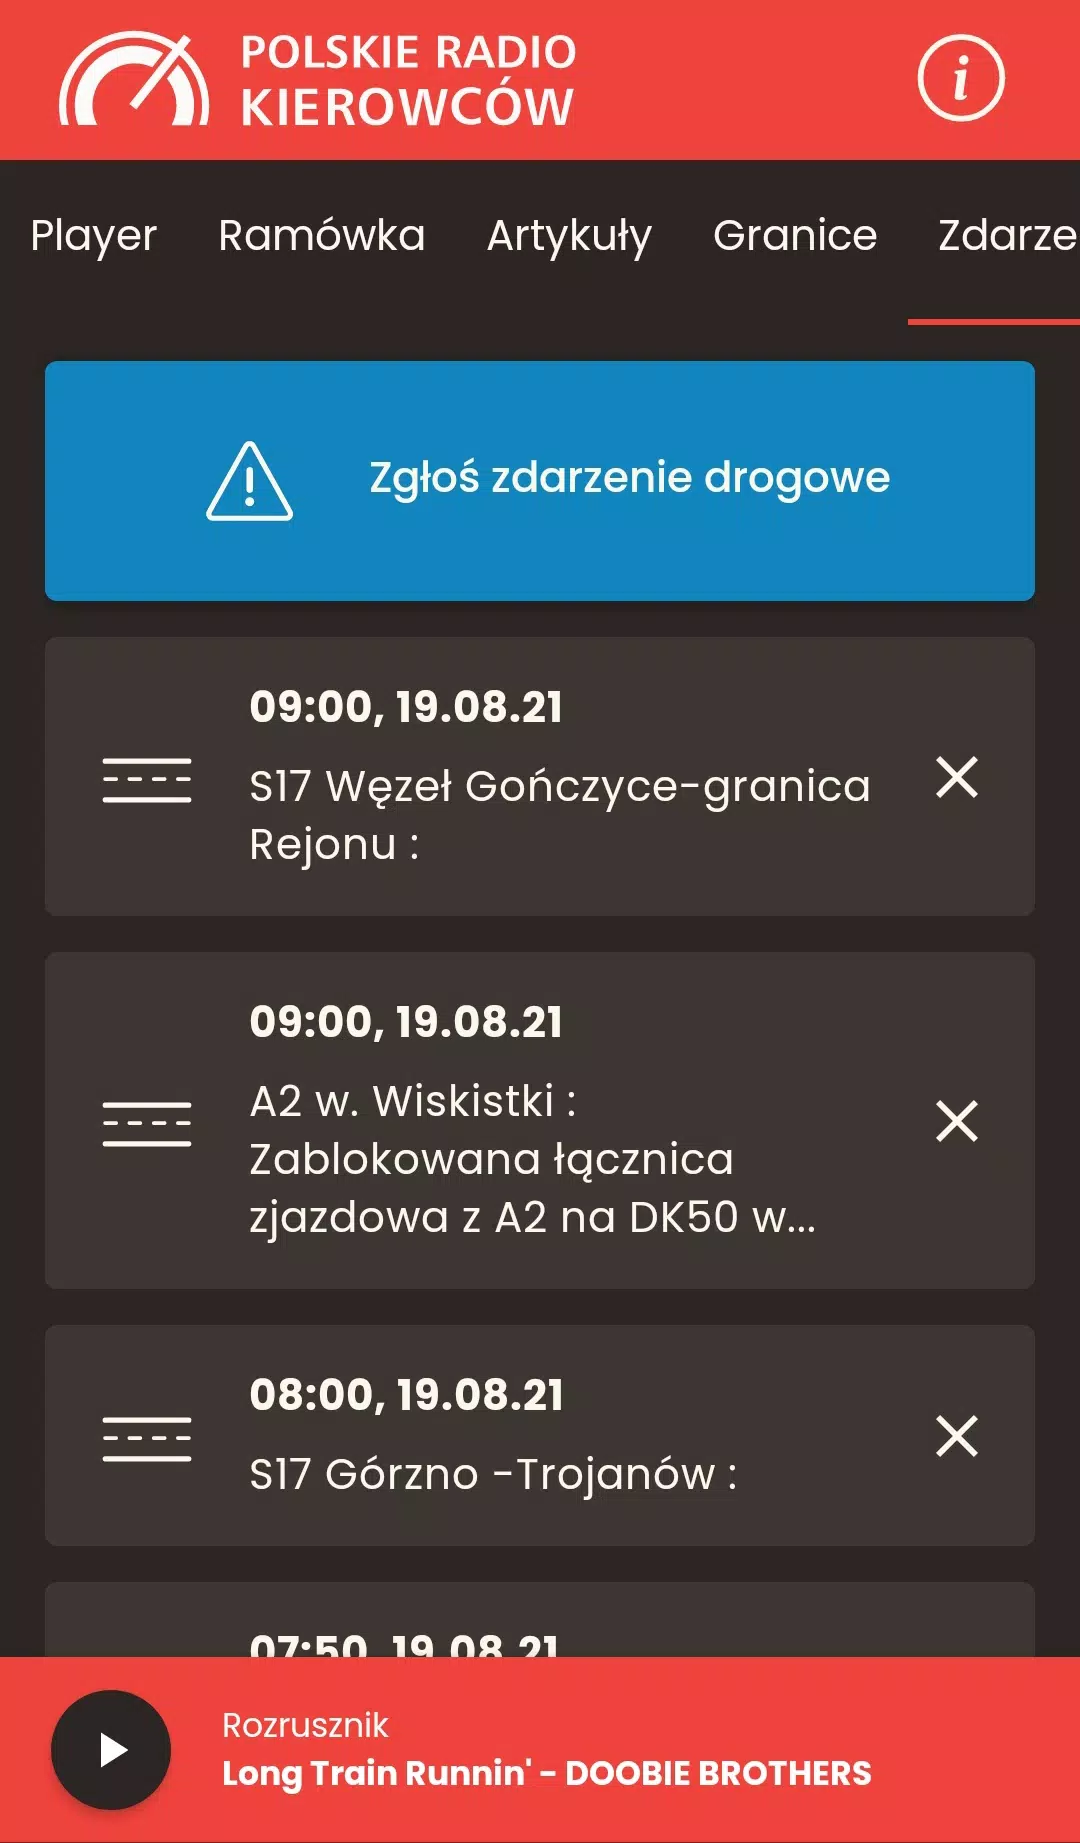 Polskie Radio Kierowców APK for Android Download